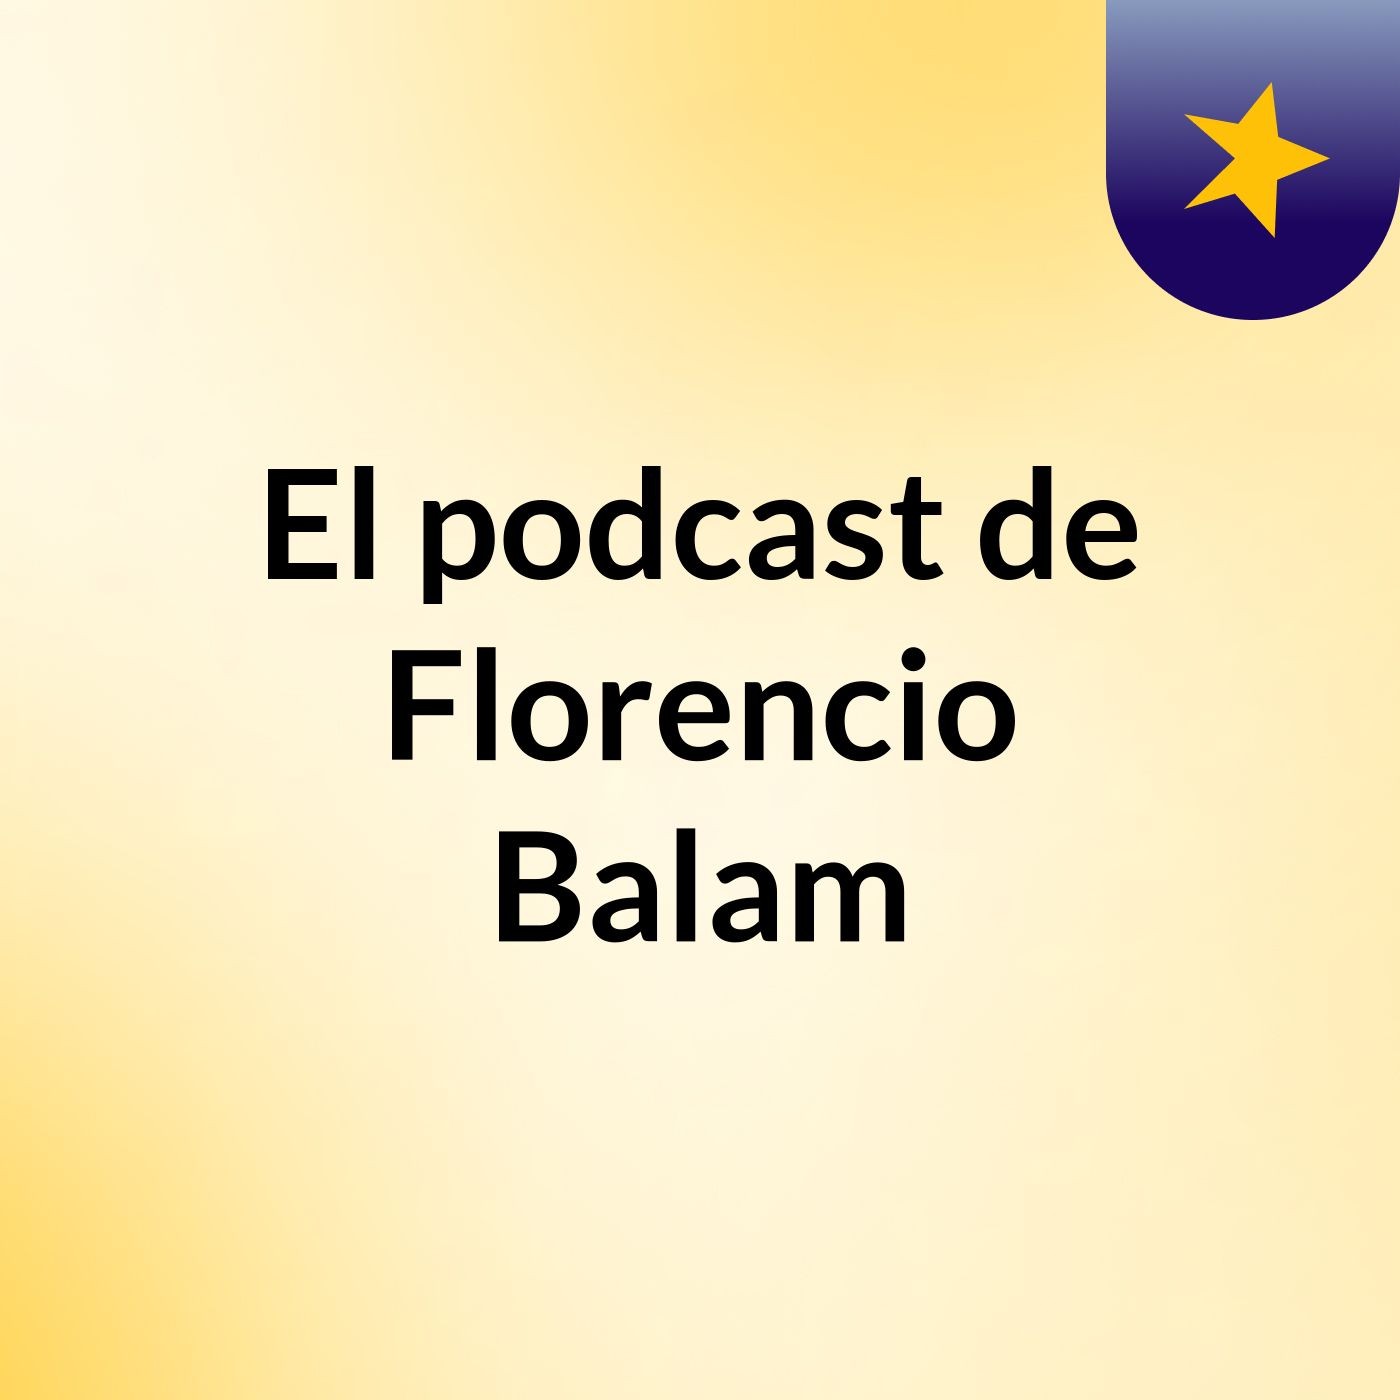 El podcast de Florencio Balam